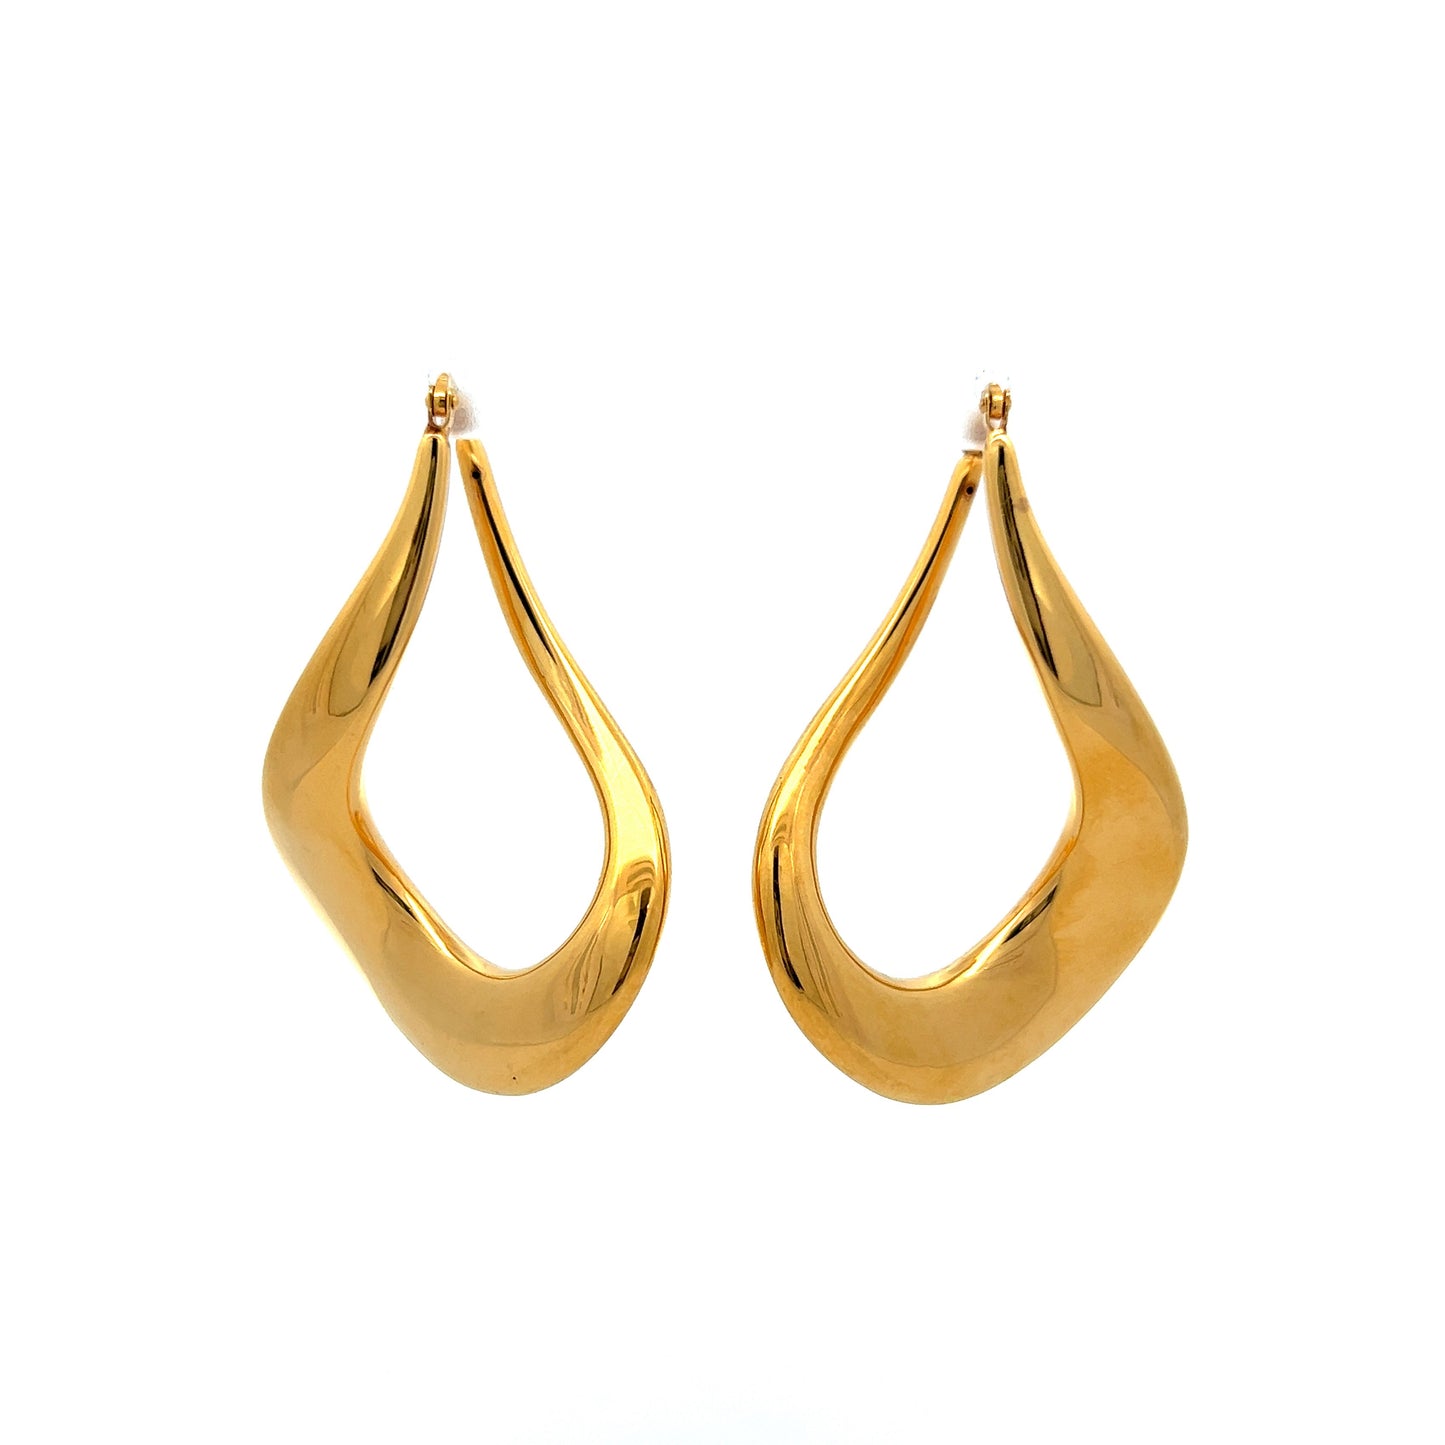 Twisted Teardrop Dangle Earrings in 18k Yellow Gold